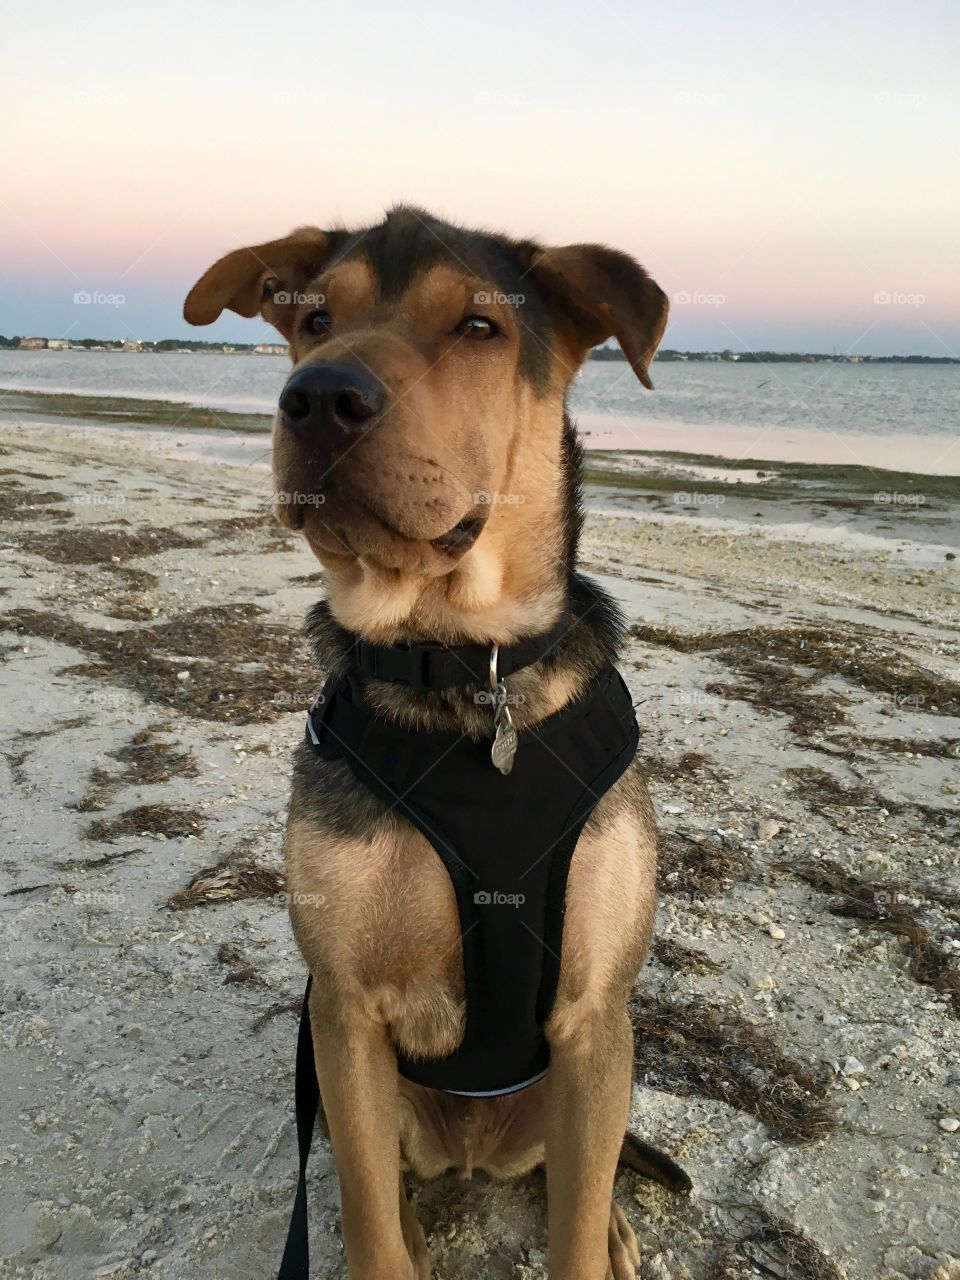 Puppy on beach. 